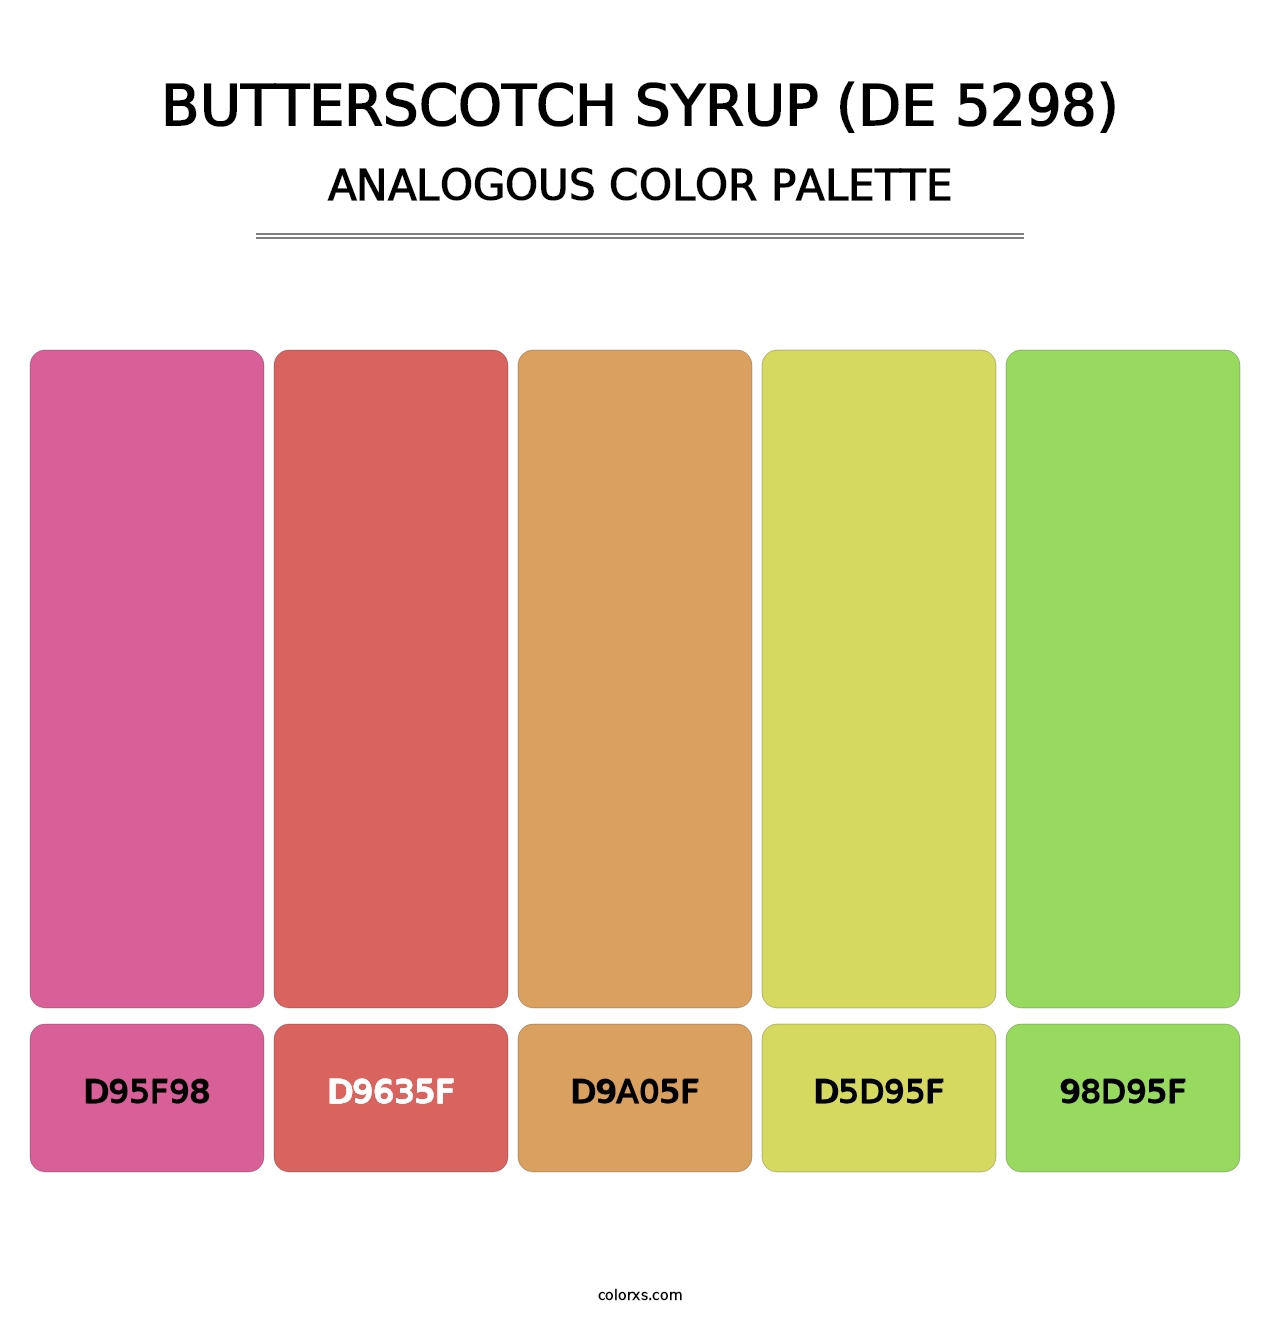 Butterscotch Syrup (DE 5298) - Analogous Color Palette